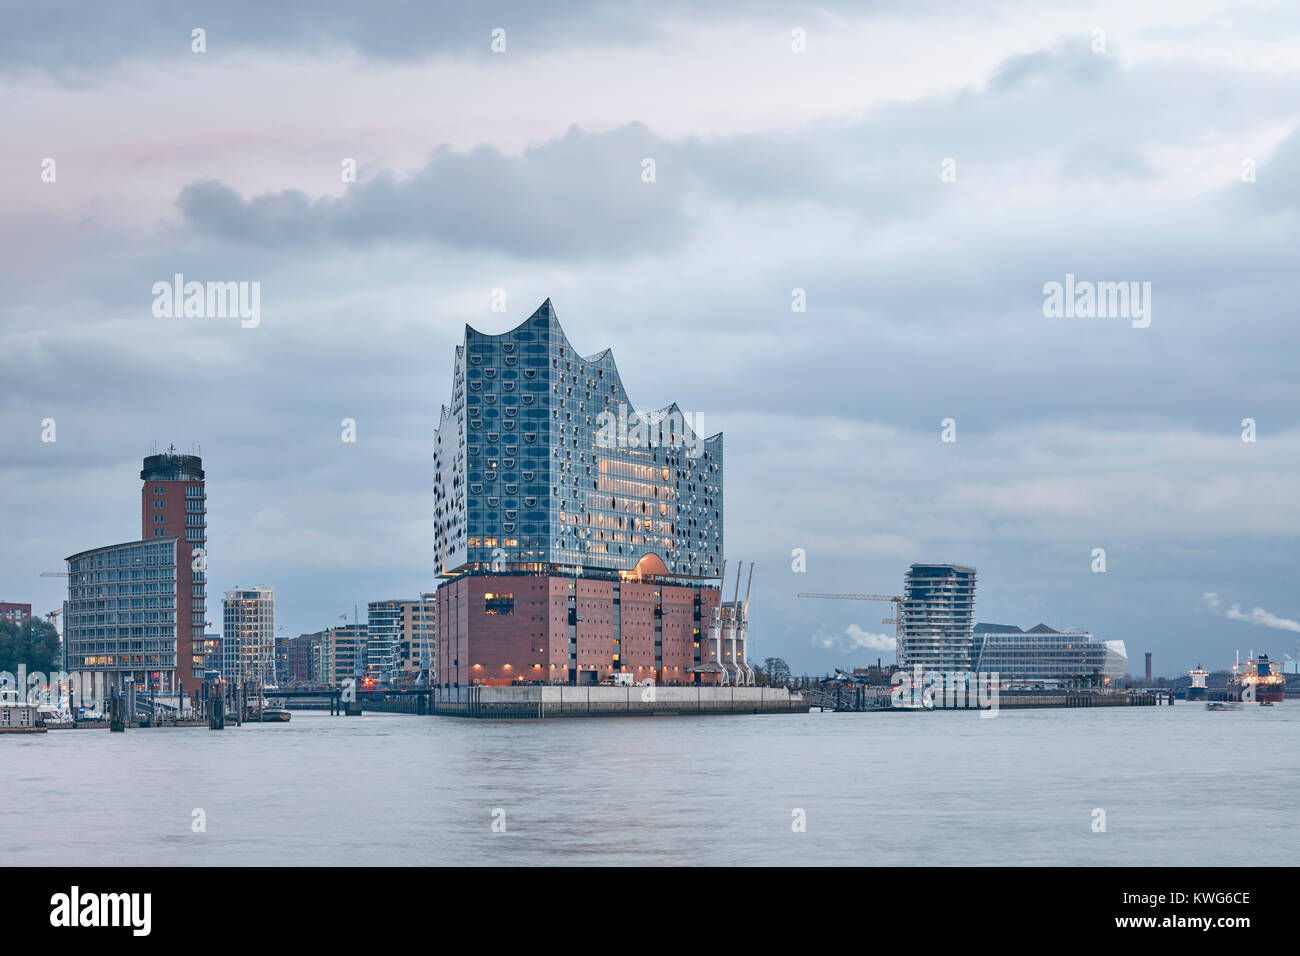 Elbphilharmonie, Konzertsaal von den Architekten Herzog und de Meuron an der Elbe, HafenCity, Hamburg, Deutschland. Ansicht in der Morgendämmerung. Stockfoto